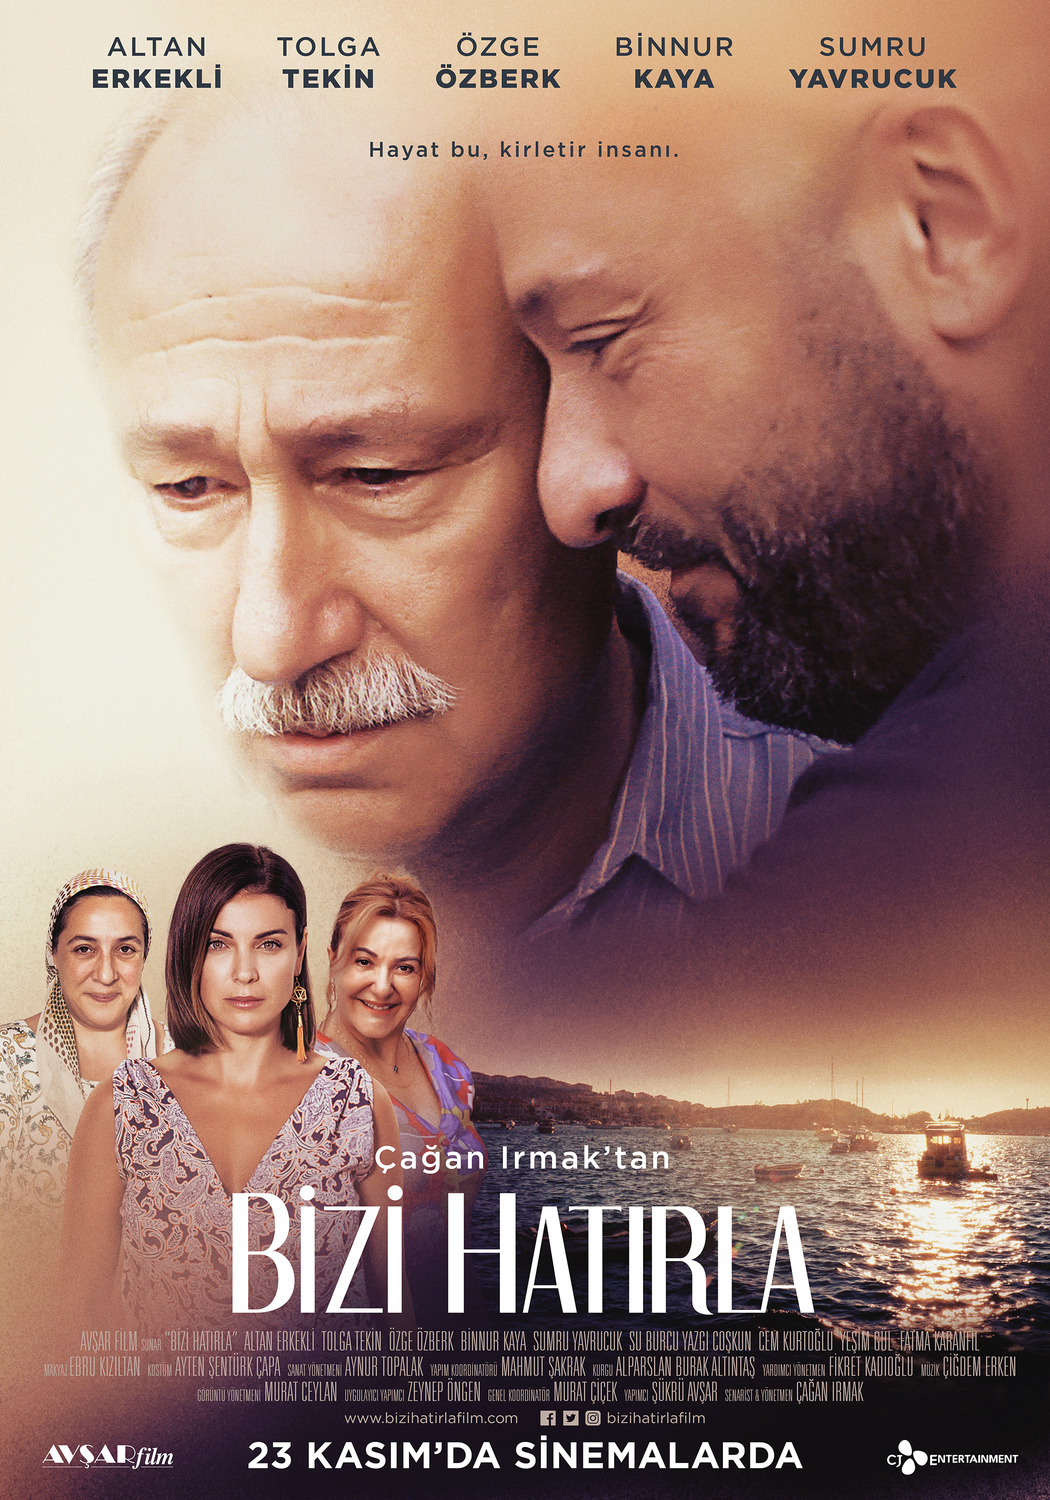 Extra Large Movie Poster Image for Bizi Hatırla (#2 of 2)